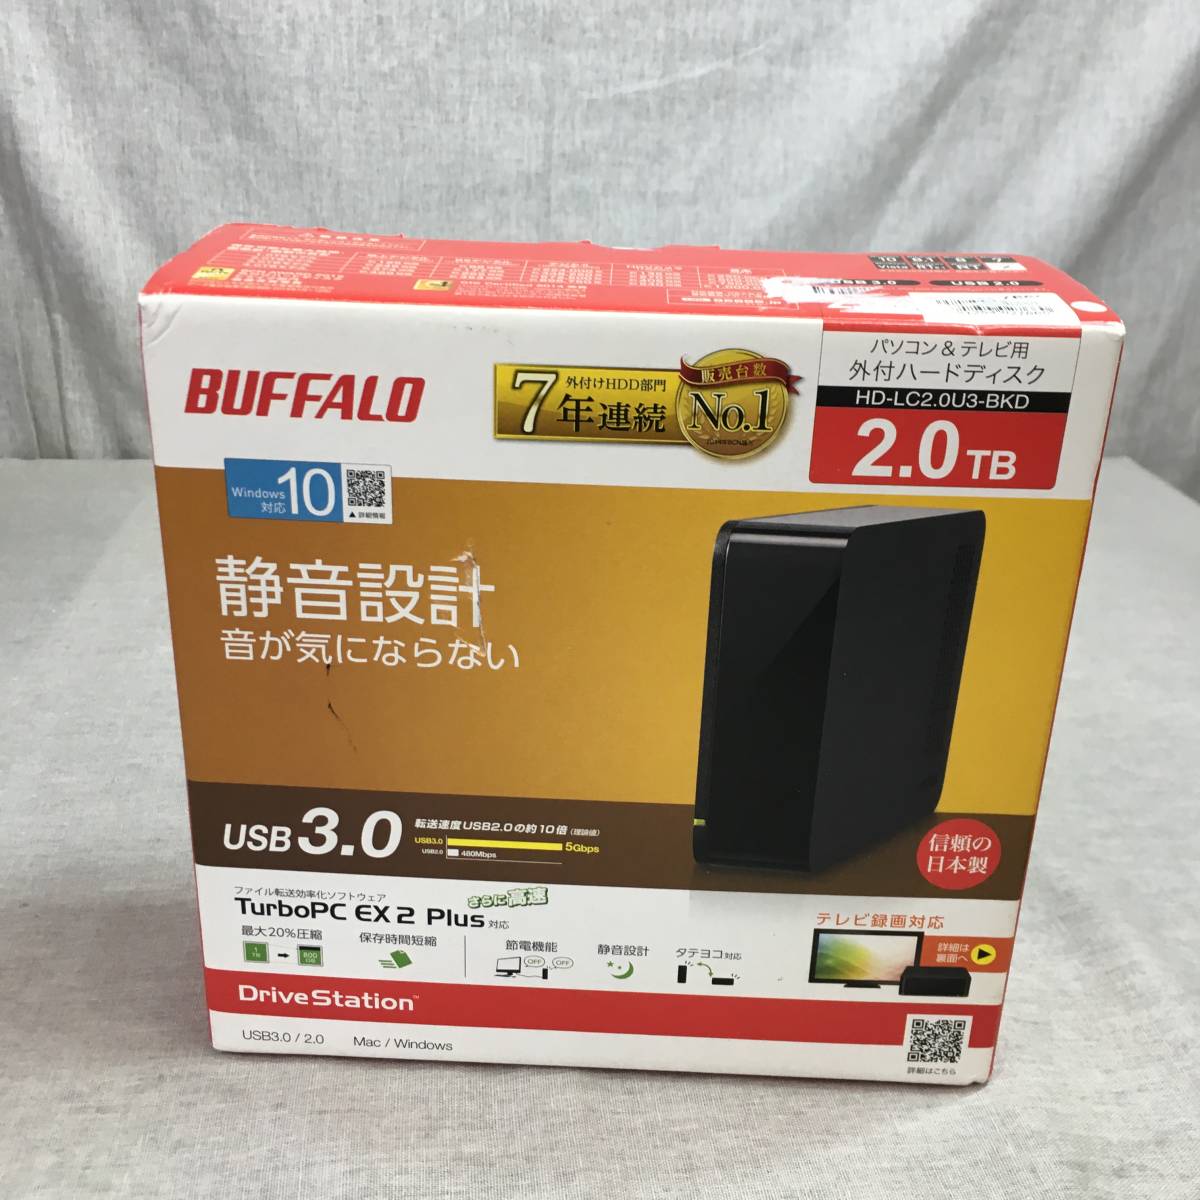 BUFFALO USB3.0 外付けハードディスクPC/家電対応2TB ブラックHD-LC2